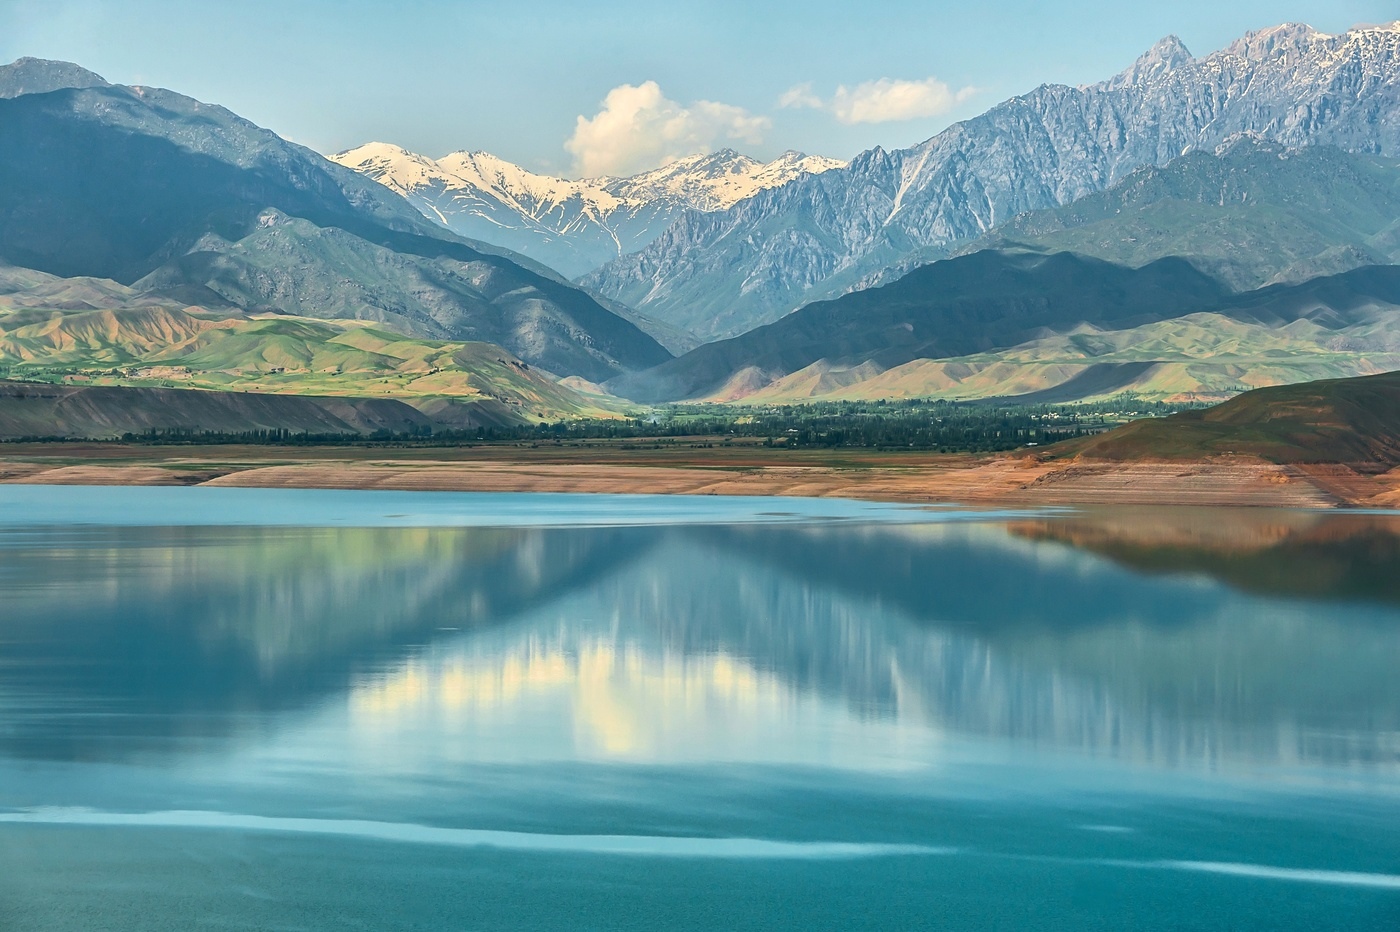 Духовные упражнения на озере Иссык-Куль в Киргизии от отцов-иезуитов (АНОНС НА ГОД)